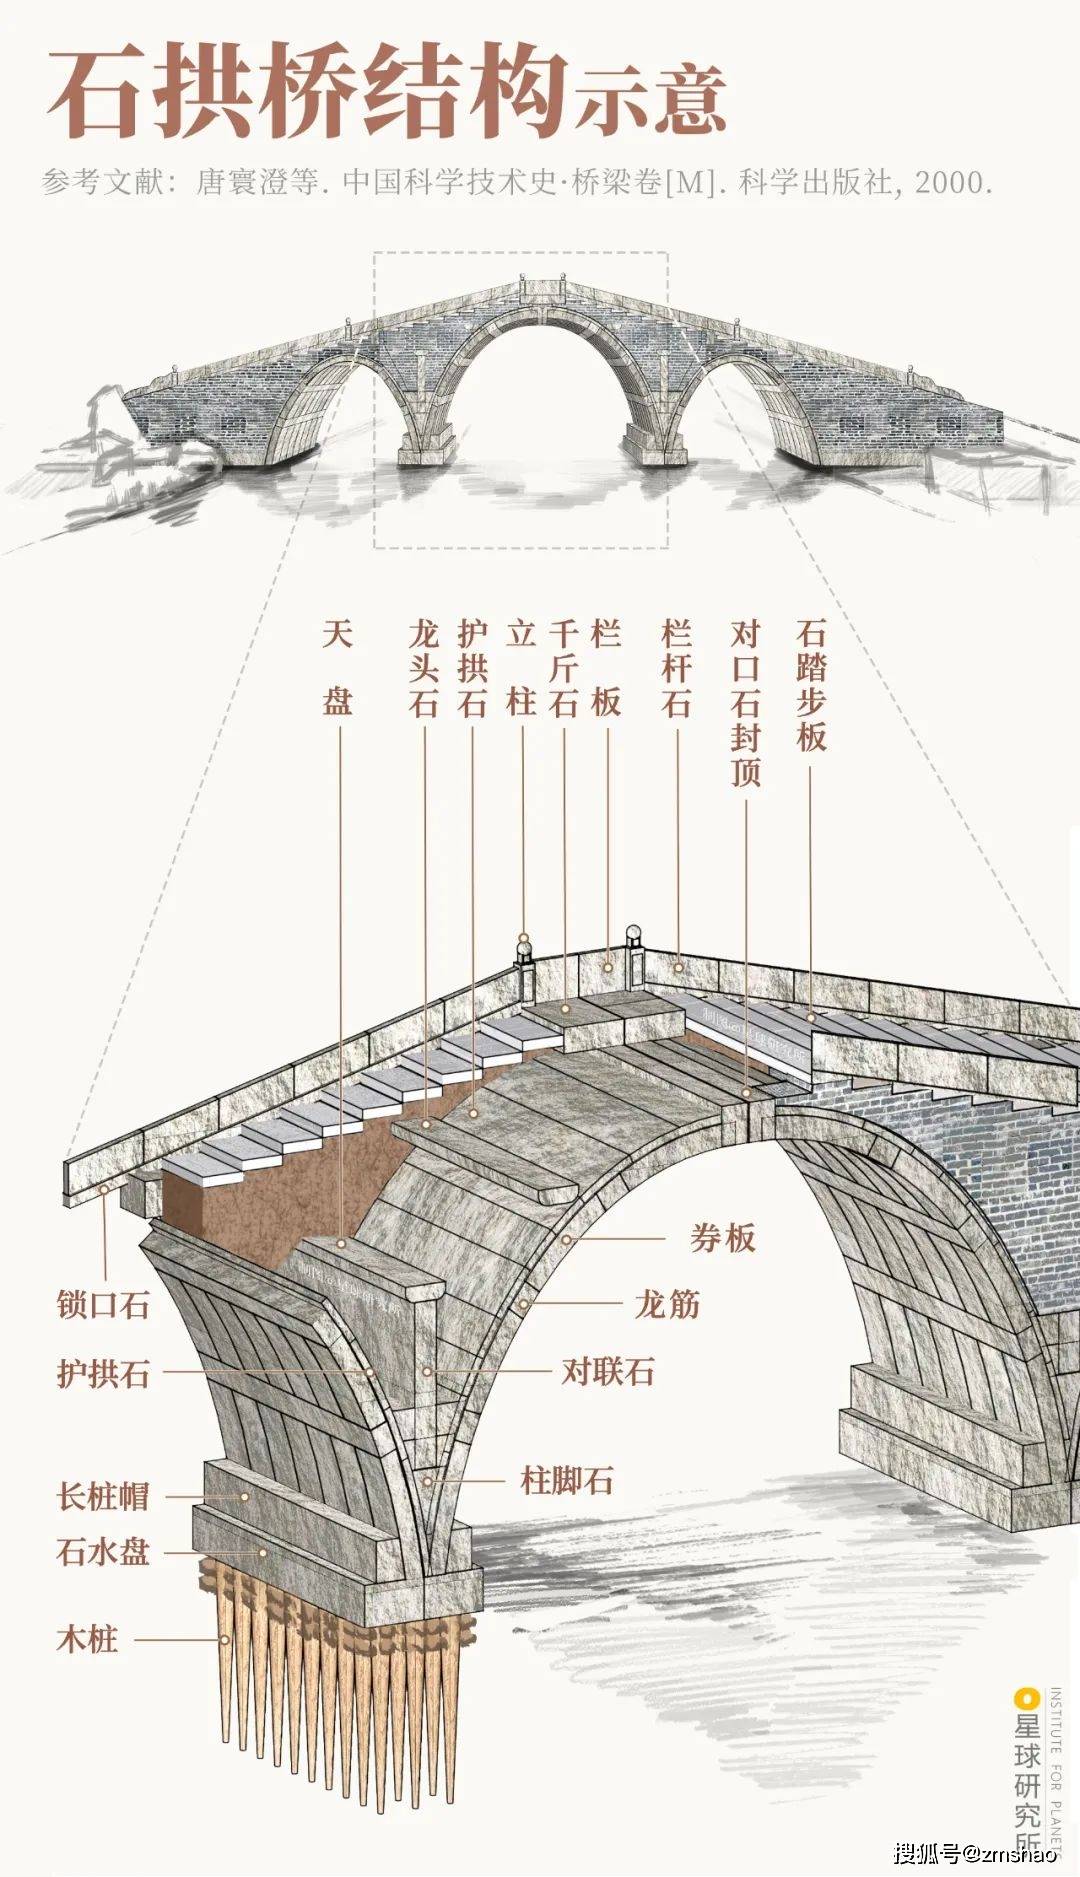 甫一开始 便拥有了相对完善的施工技艺 (石拱桥结构示意,制图@王申雯